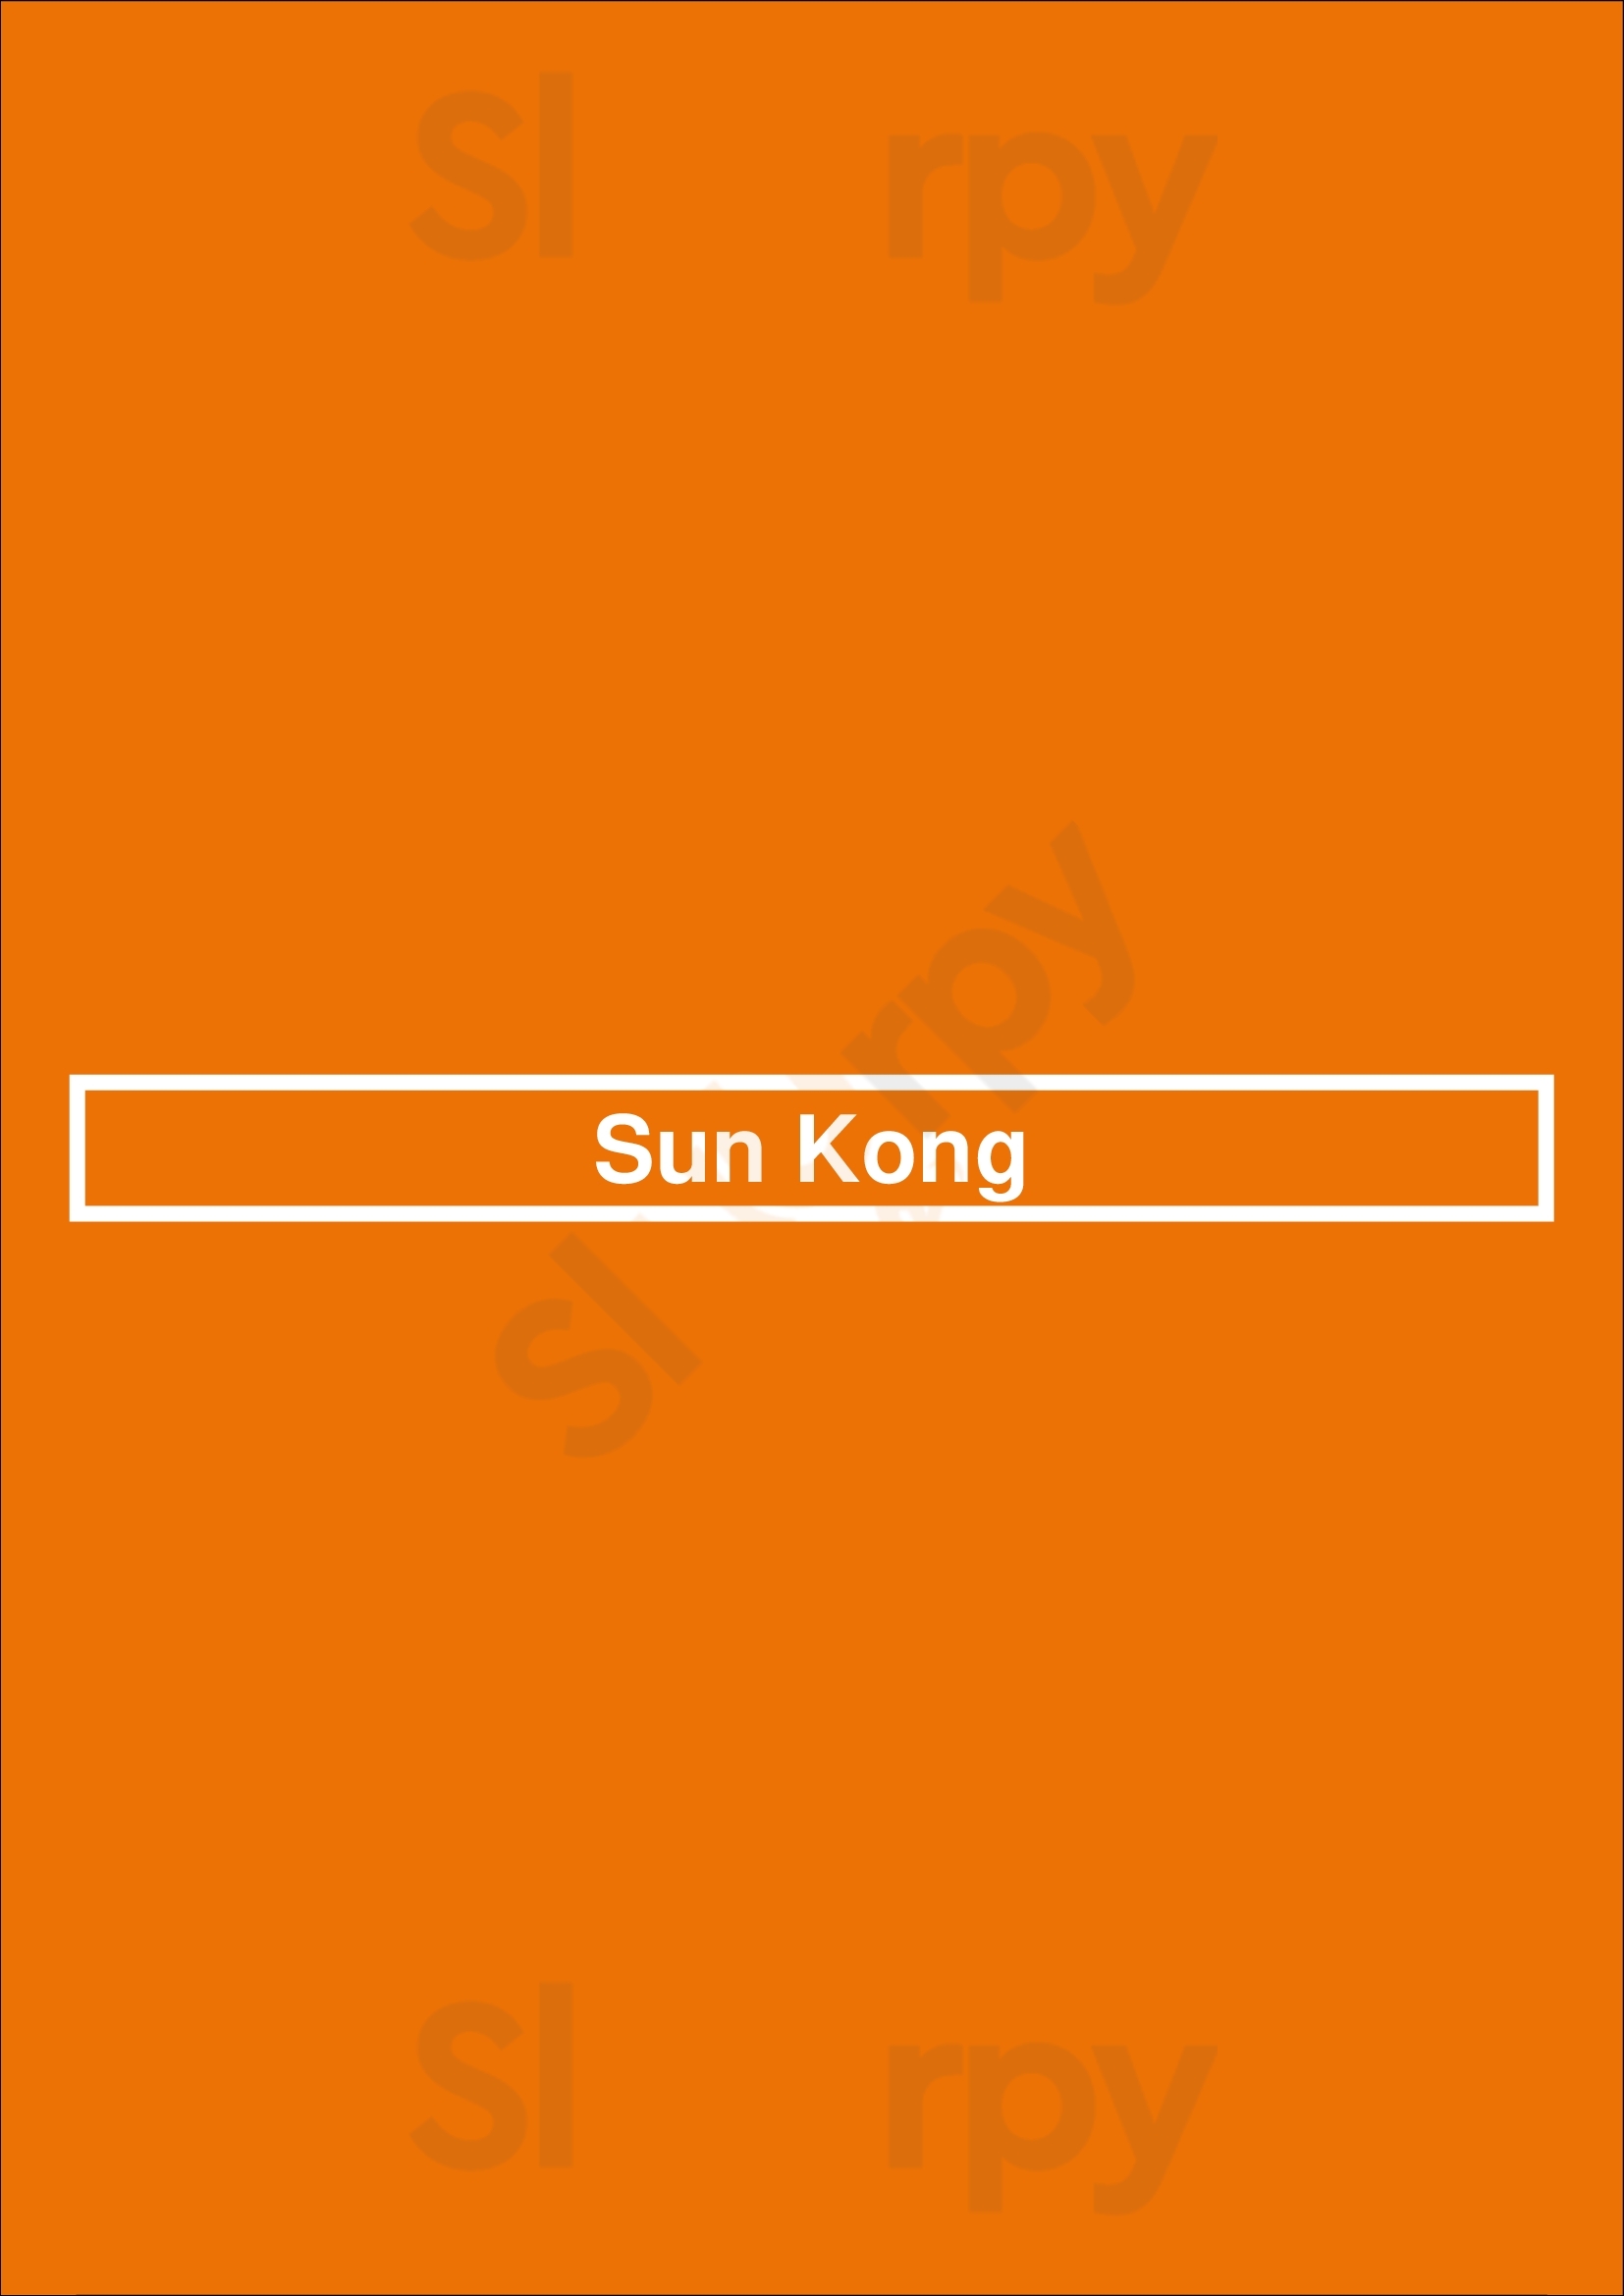 Sun Kong Wakefield Menu - 1